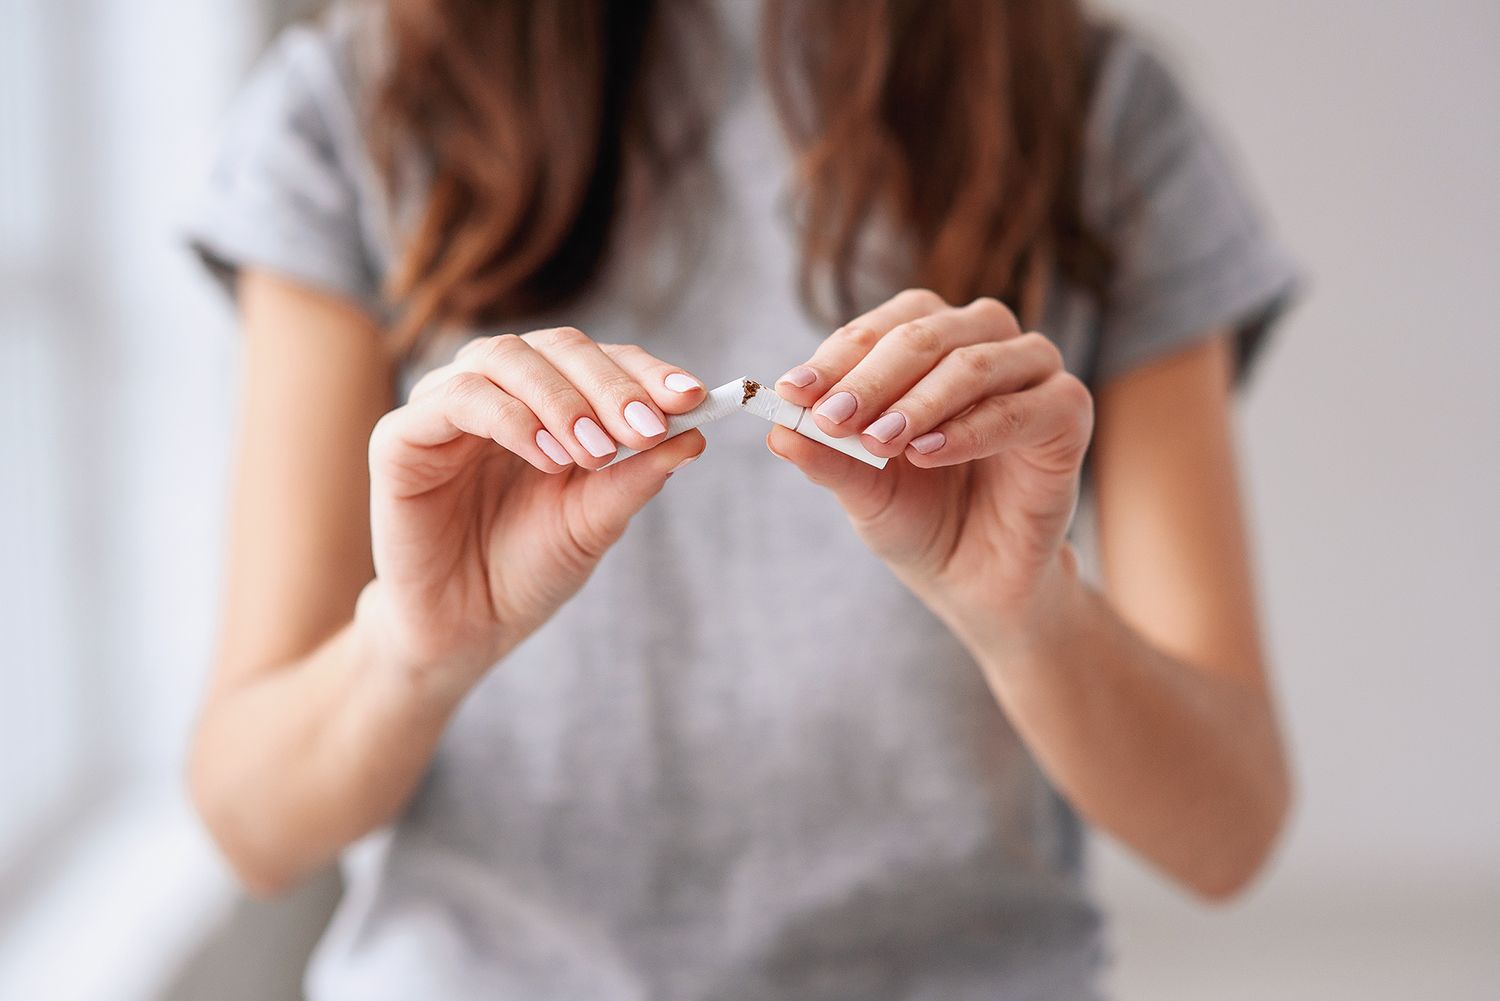 Terapii noi pentru abandonarea fumatului, incluse pe Lista medicamentelor esențiale